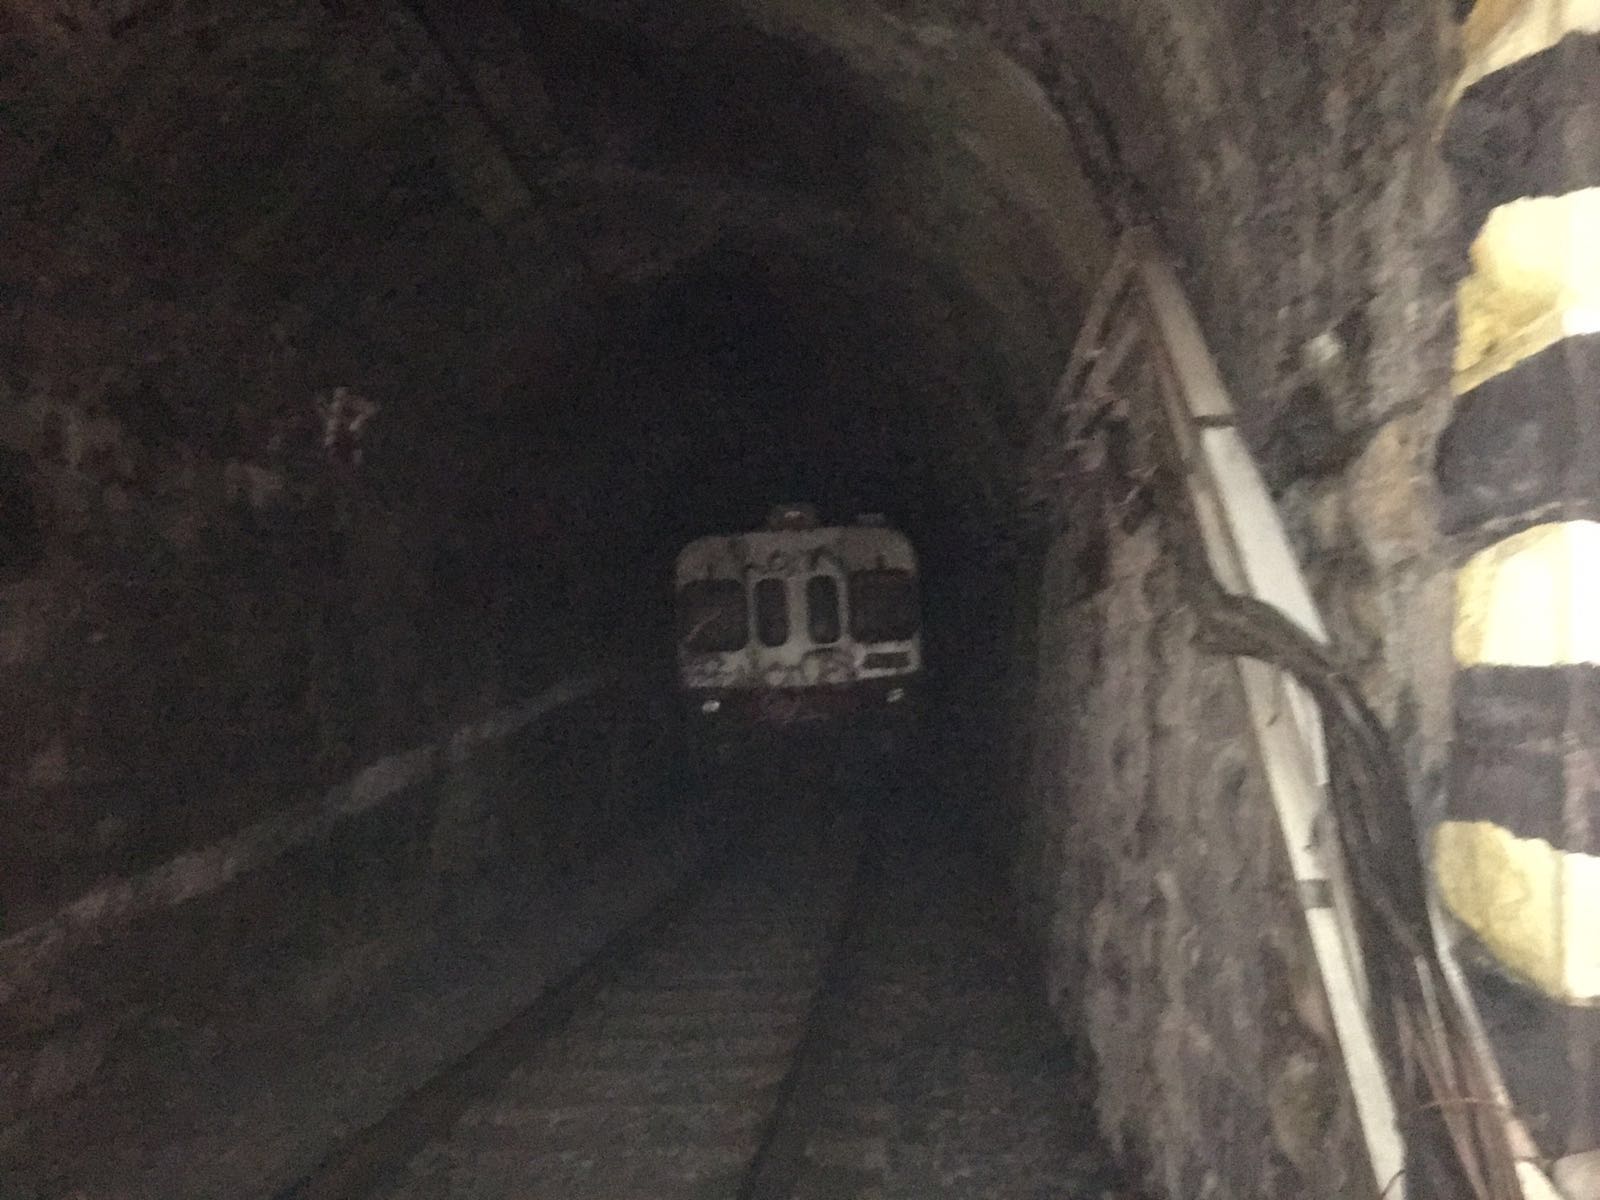 Ferrovie dello Stato del Lazio: Ad Antrodoco esercitazione di emergenza in galleria